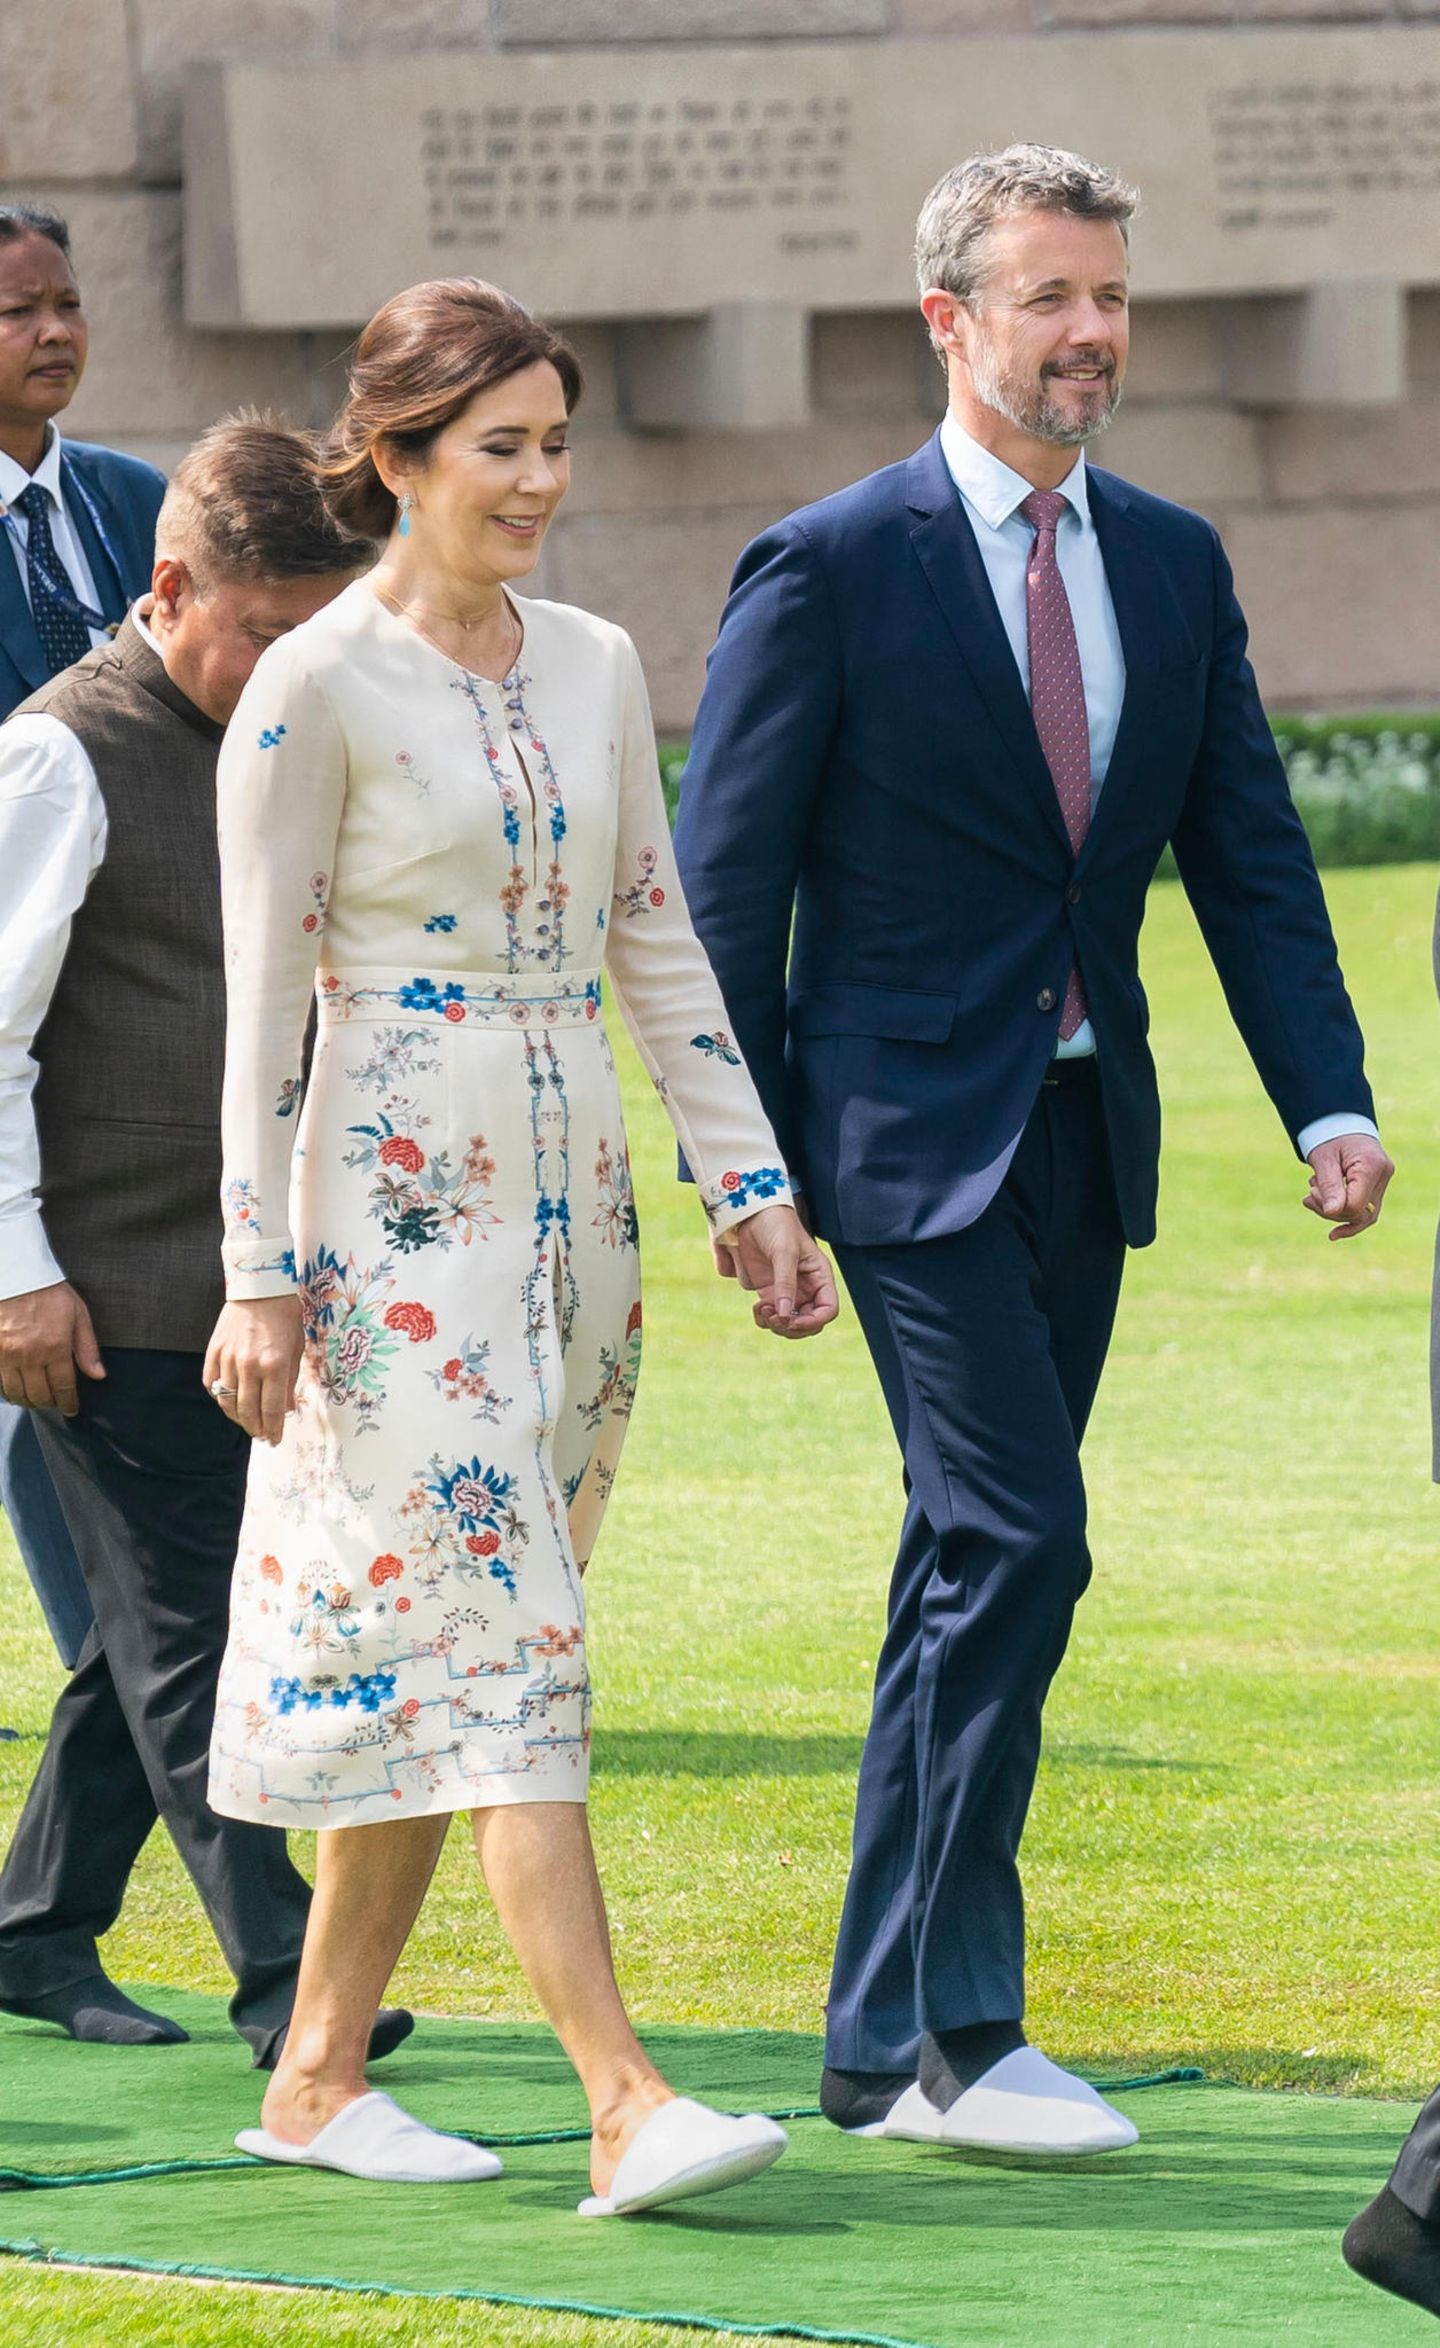 Neben dem floralen Kleid ist auch Prinzessin Marys Schuhwahl ein echter Hingucker. Die Kronprinzessin trägt an ihrem zweiten Tag der Indien-Reise weiße Slipper. Aber auch Prinz Frederik musste sich wohl zu seinem Anzug in weiße Hausschuhe schmeißen.